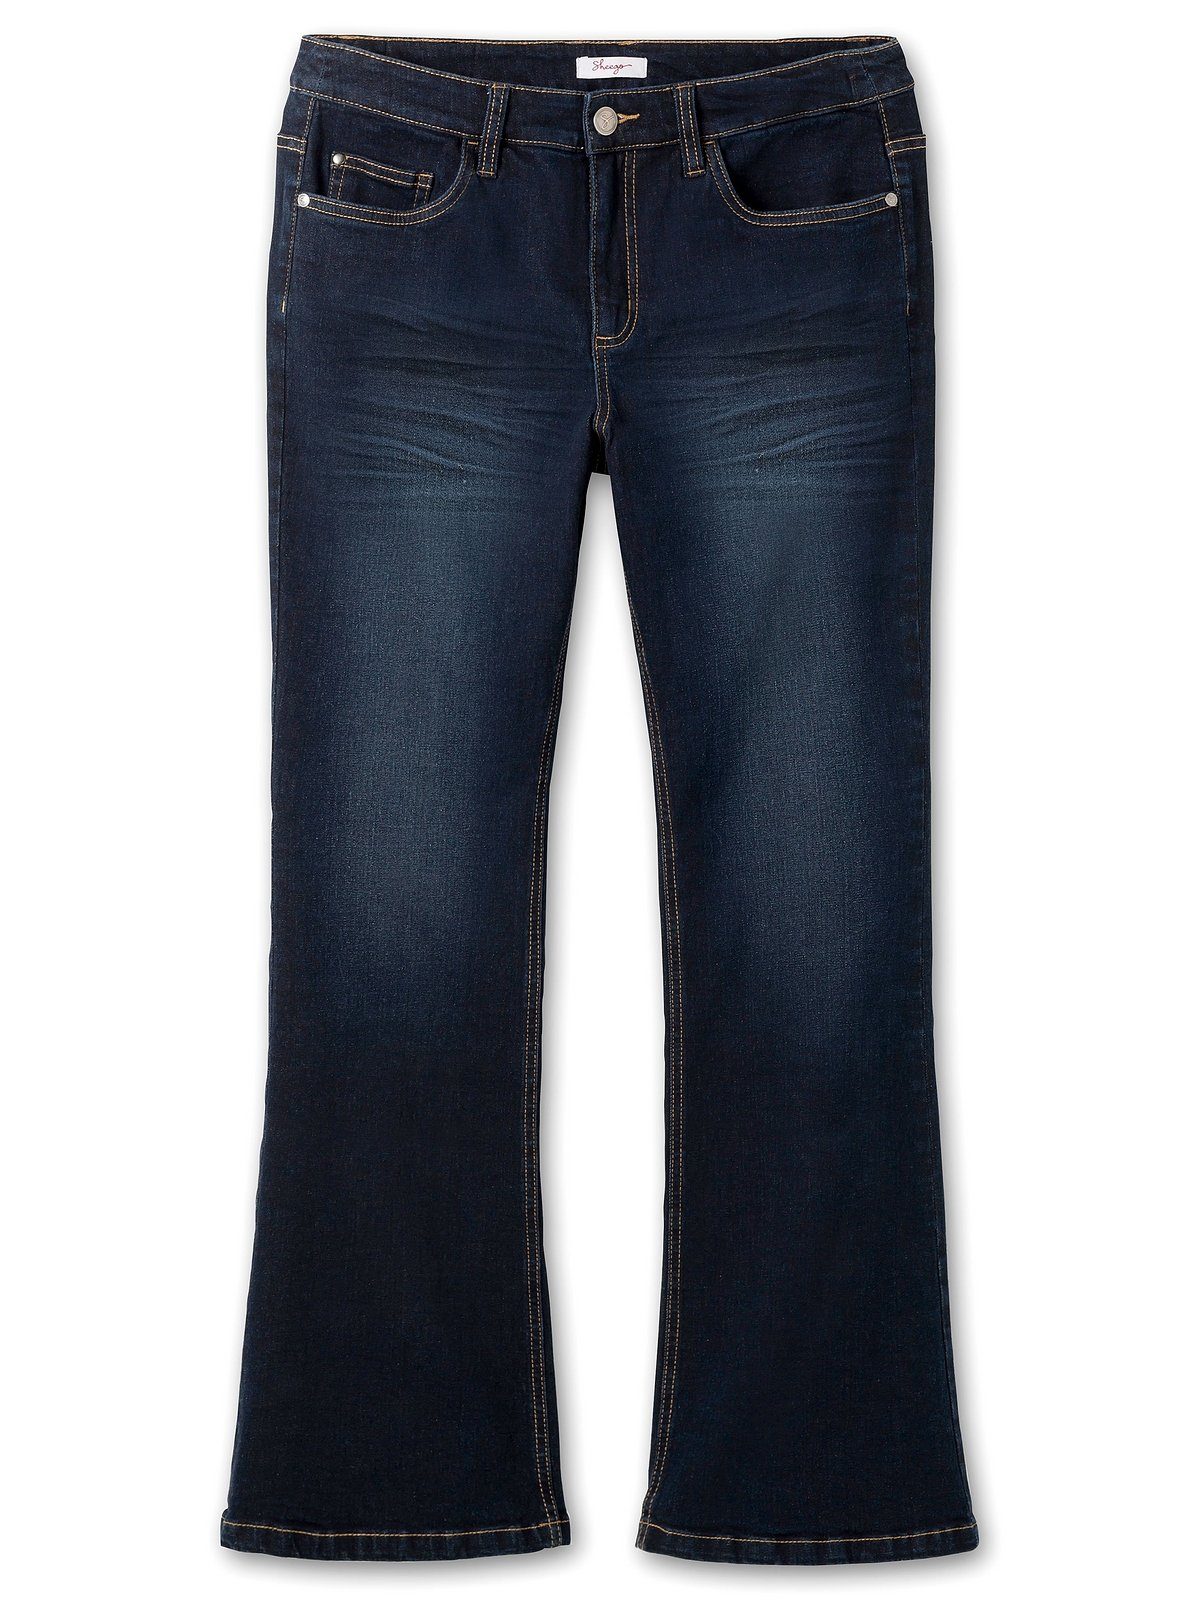 Sheego Bootcut-Jeans Große Größen mit Denim extralang blue Used-Effekten, dark